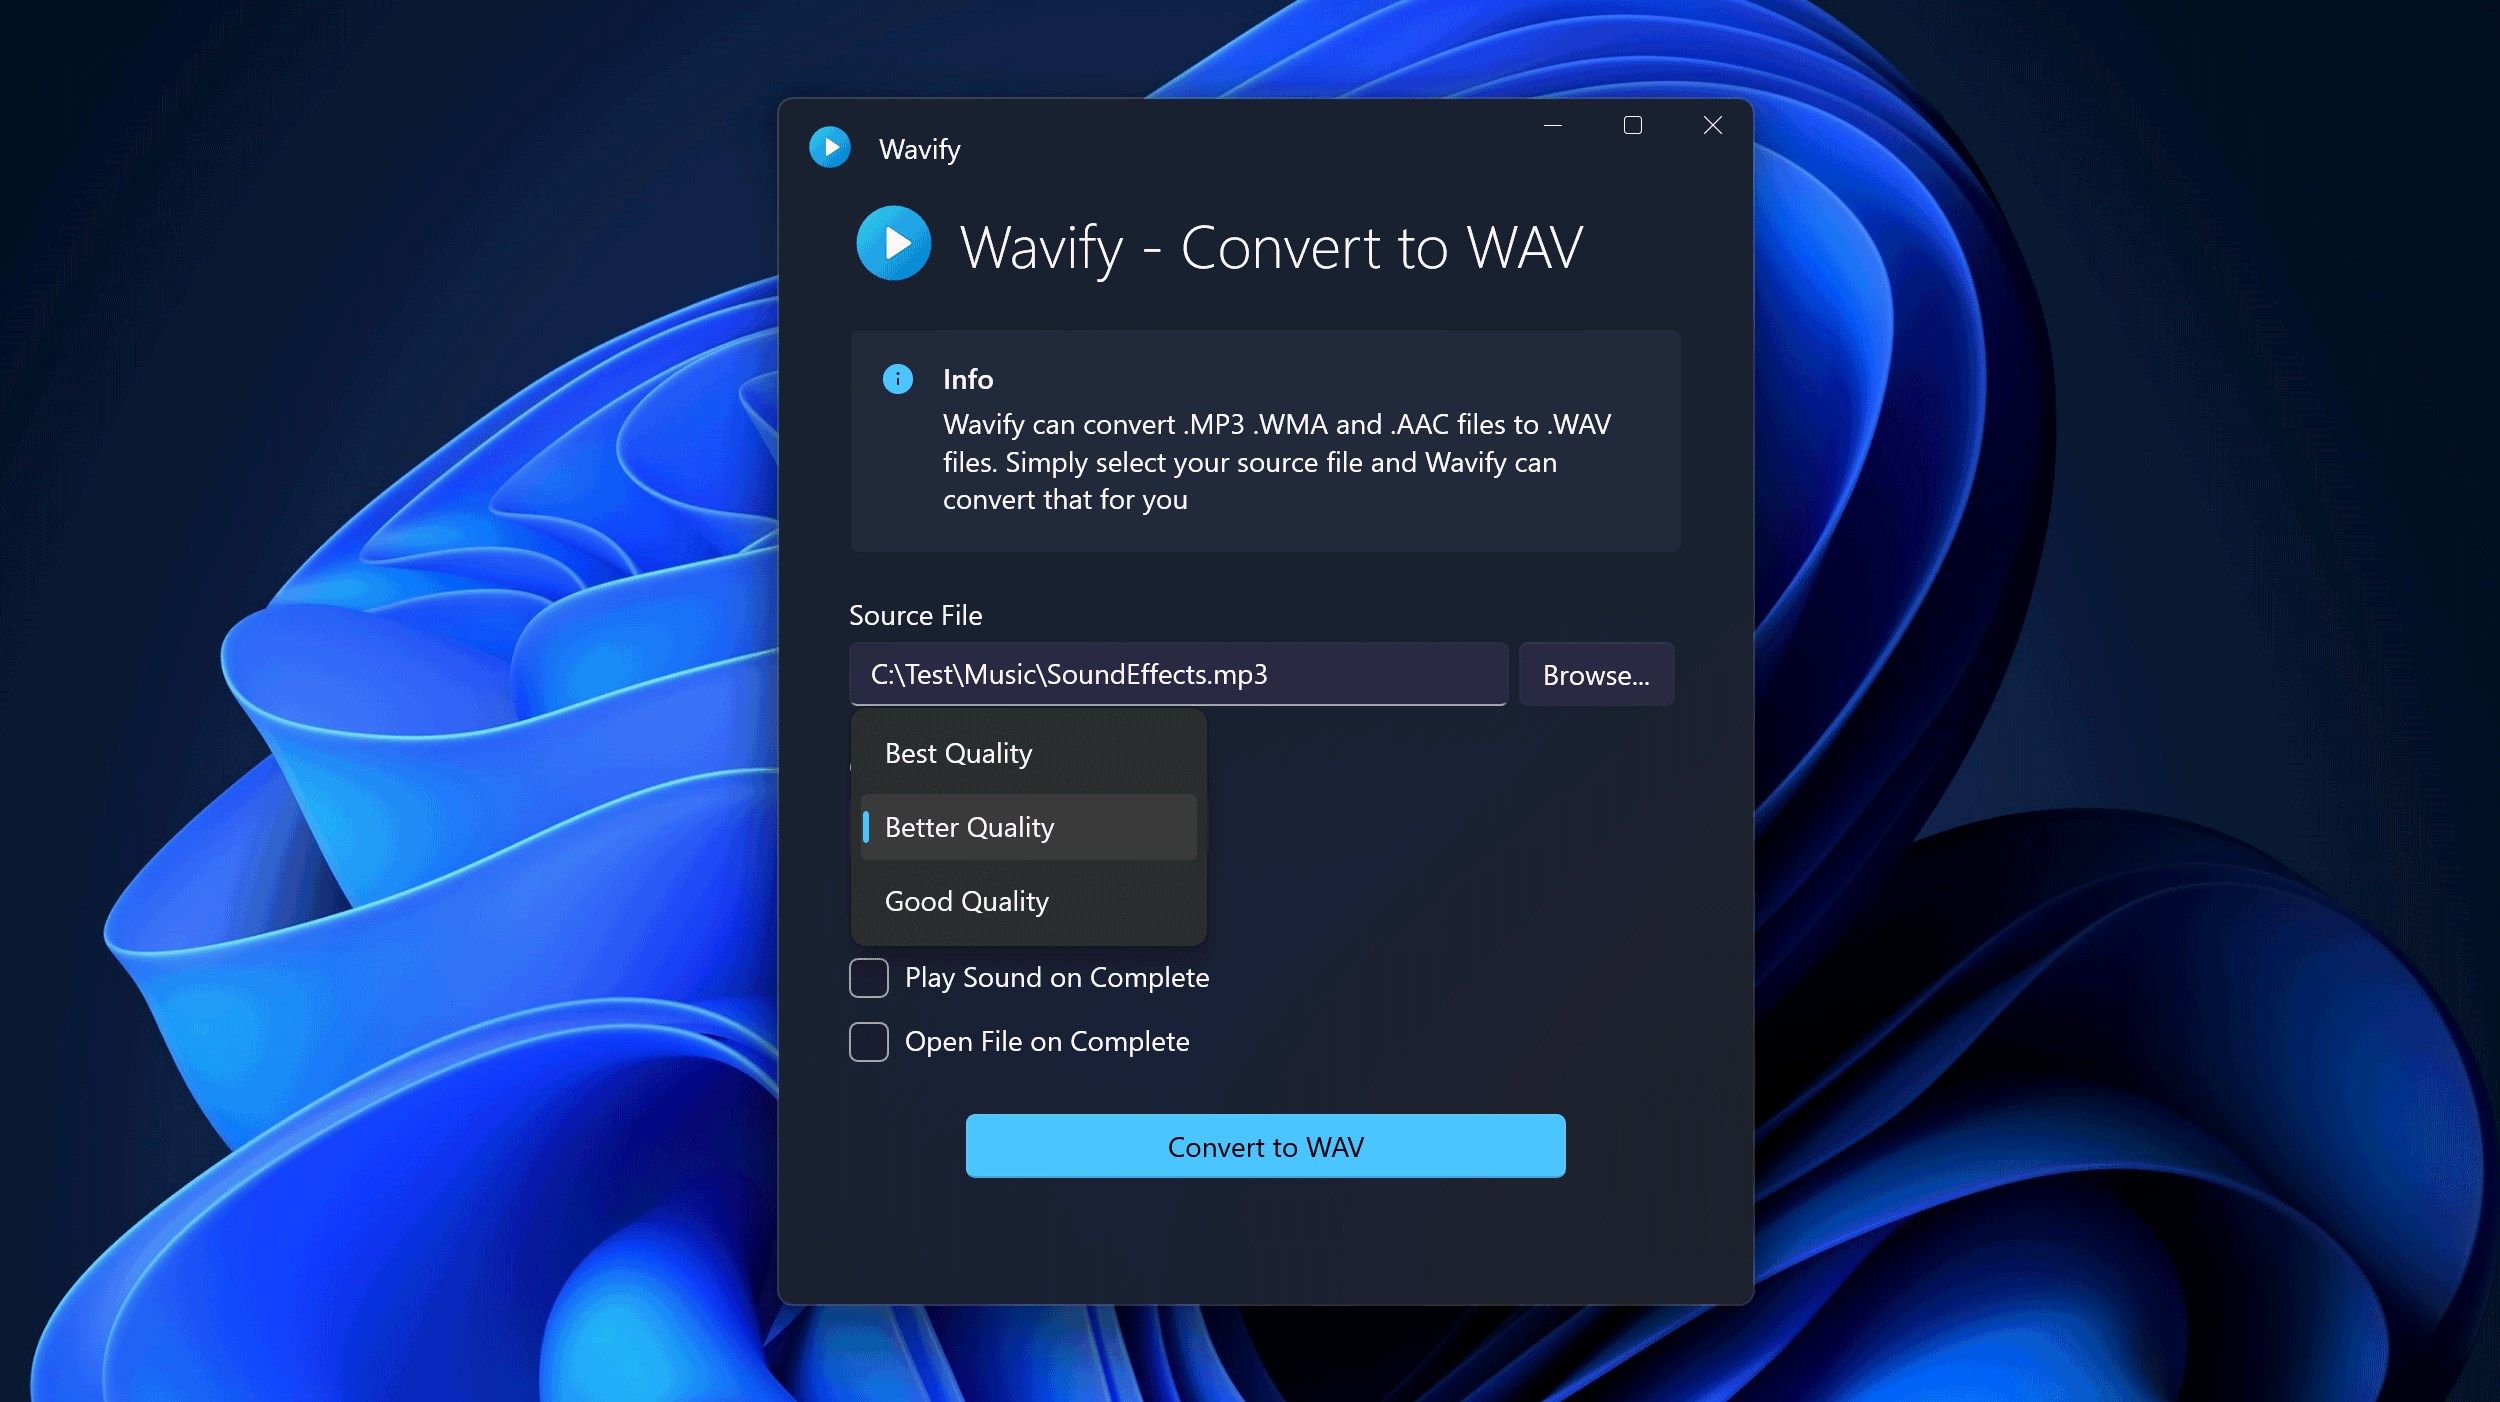 Wavify - Convert to WAV